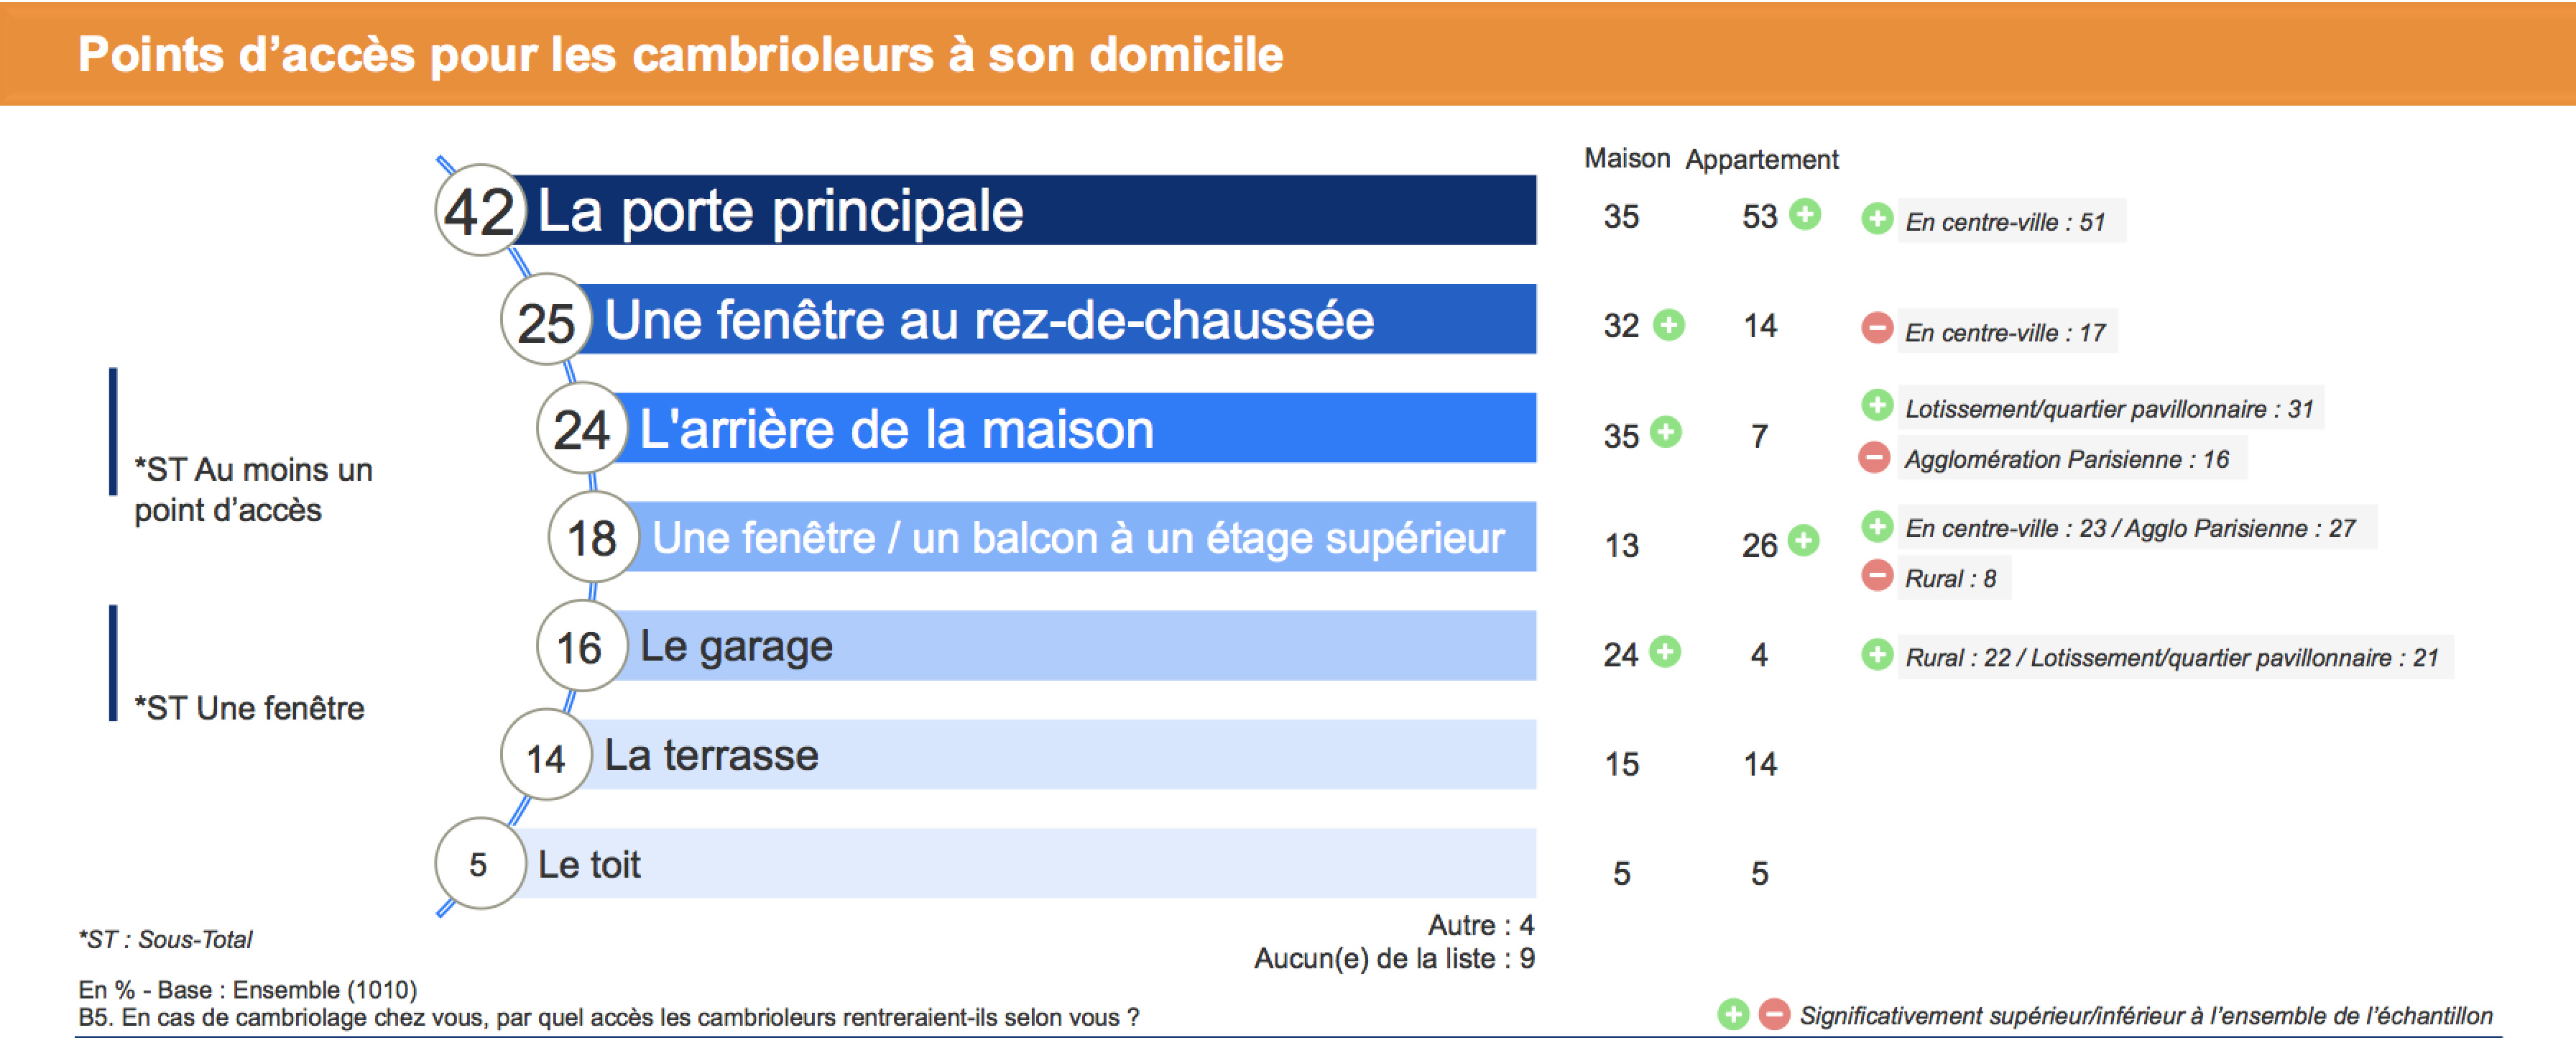 Points d'accès pour la cambrioleurs à son domiciles selon les Français - Source : Baromètre A2P 2022